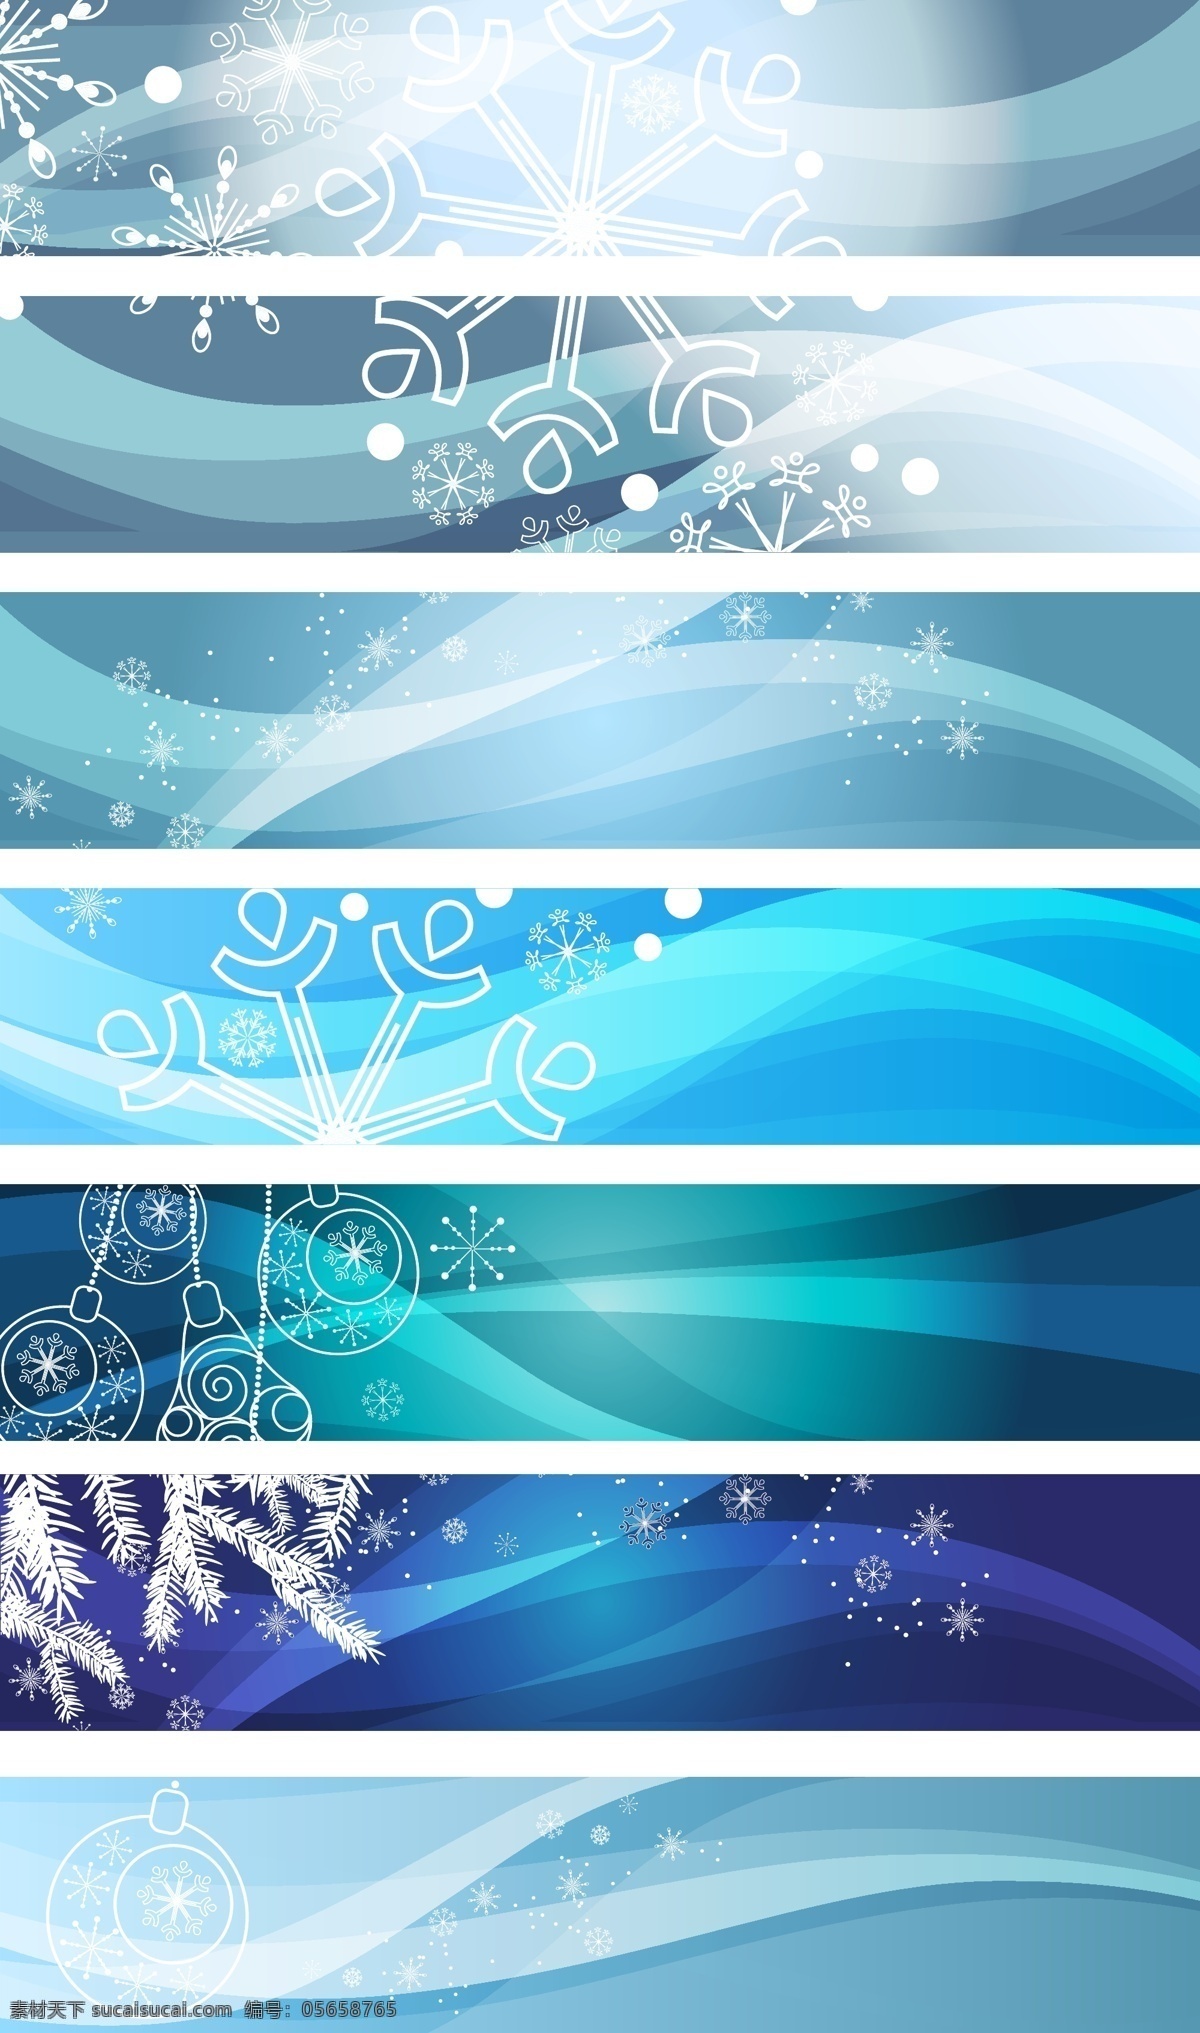 蓝色 冰凉 banner 背景 矢量 eps格式 广告位 曲线 矢量素材 雪花 冰冷